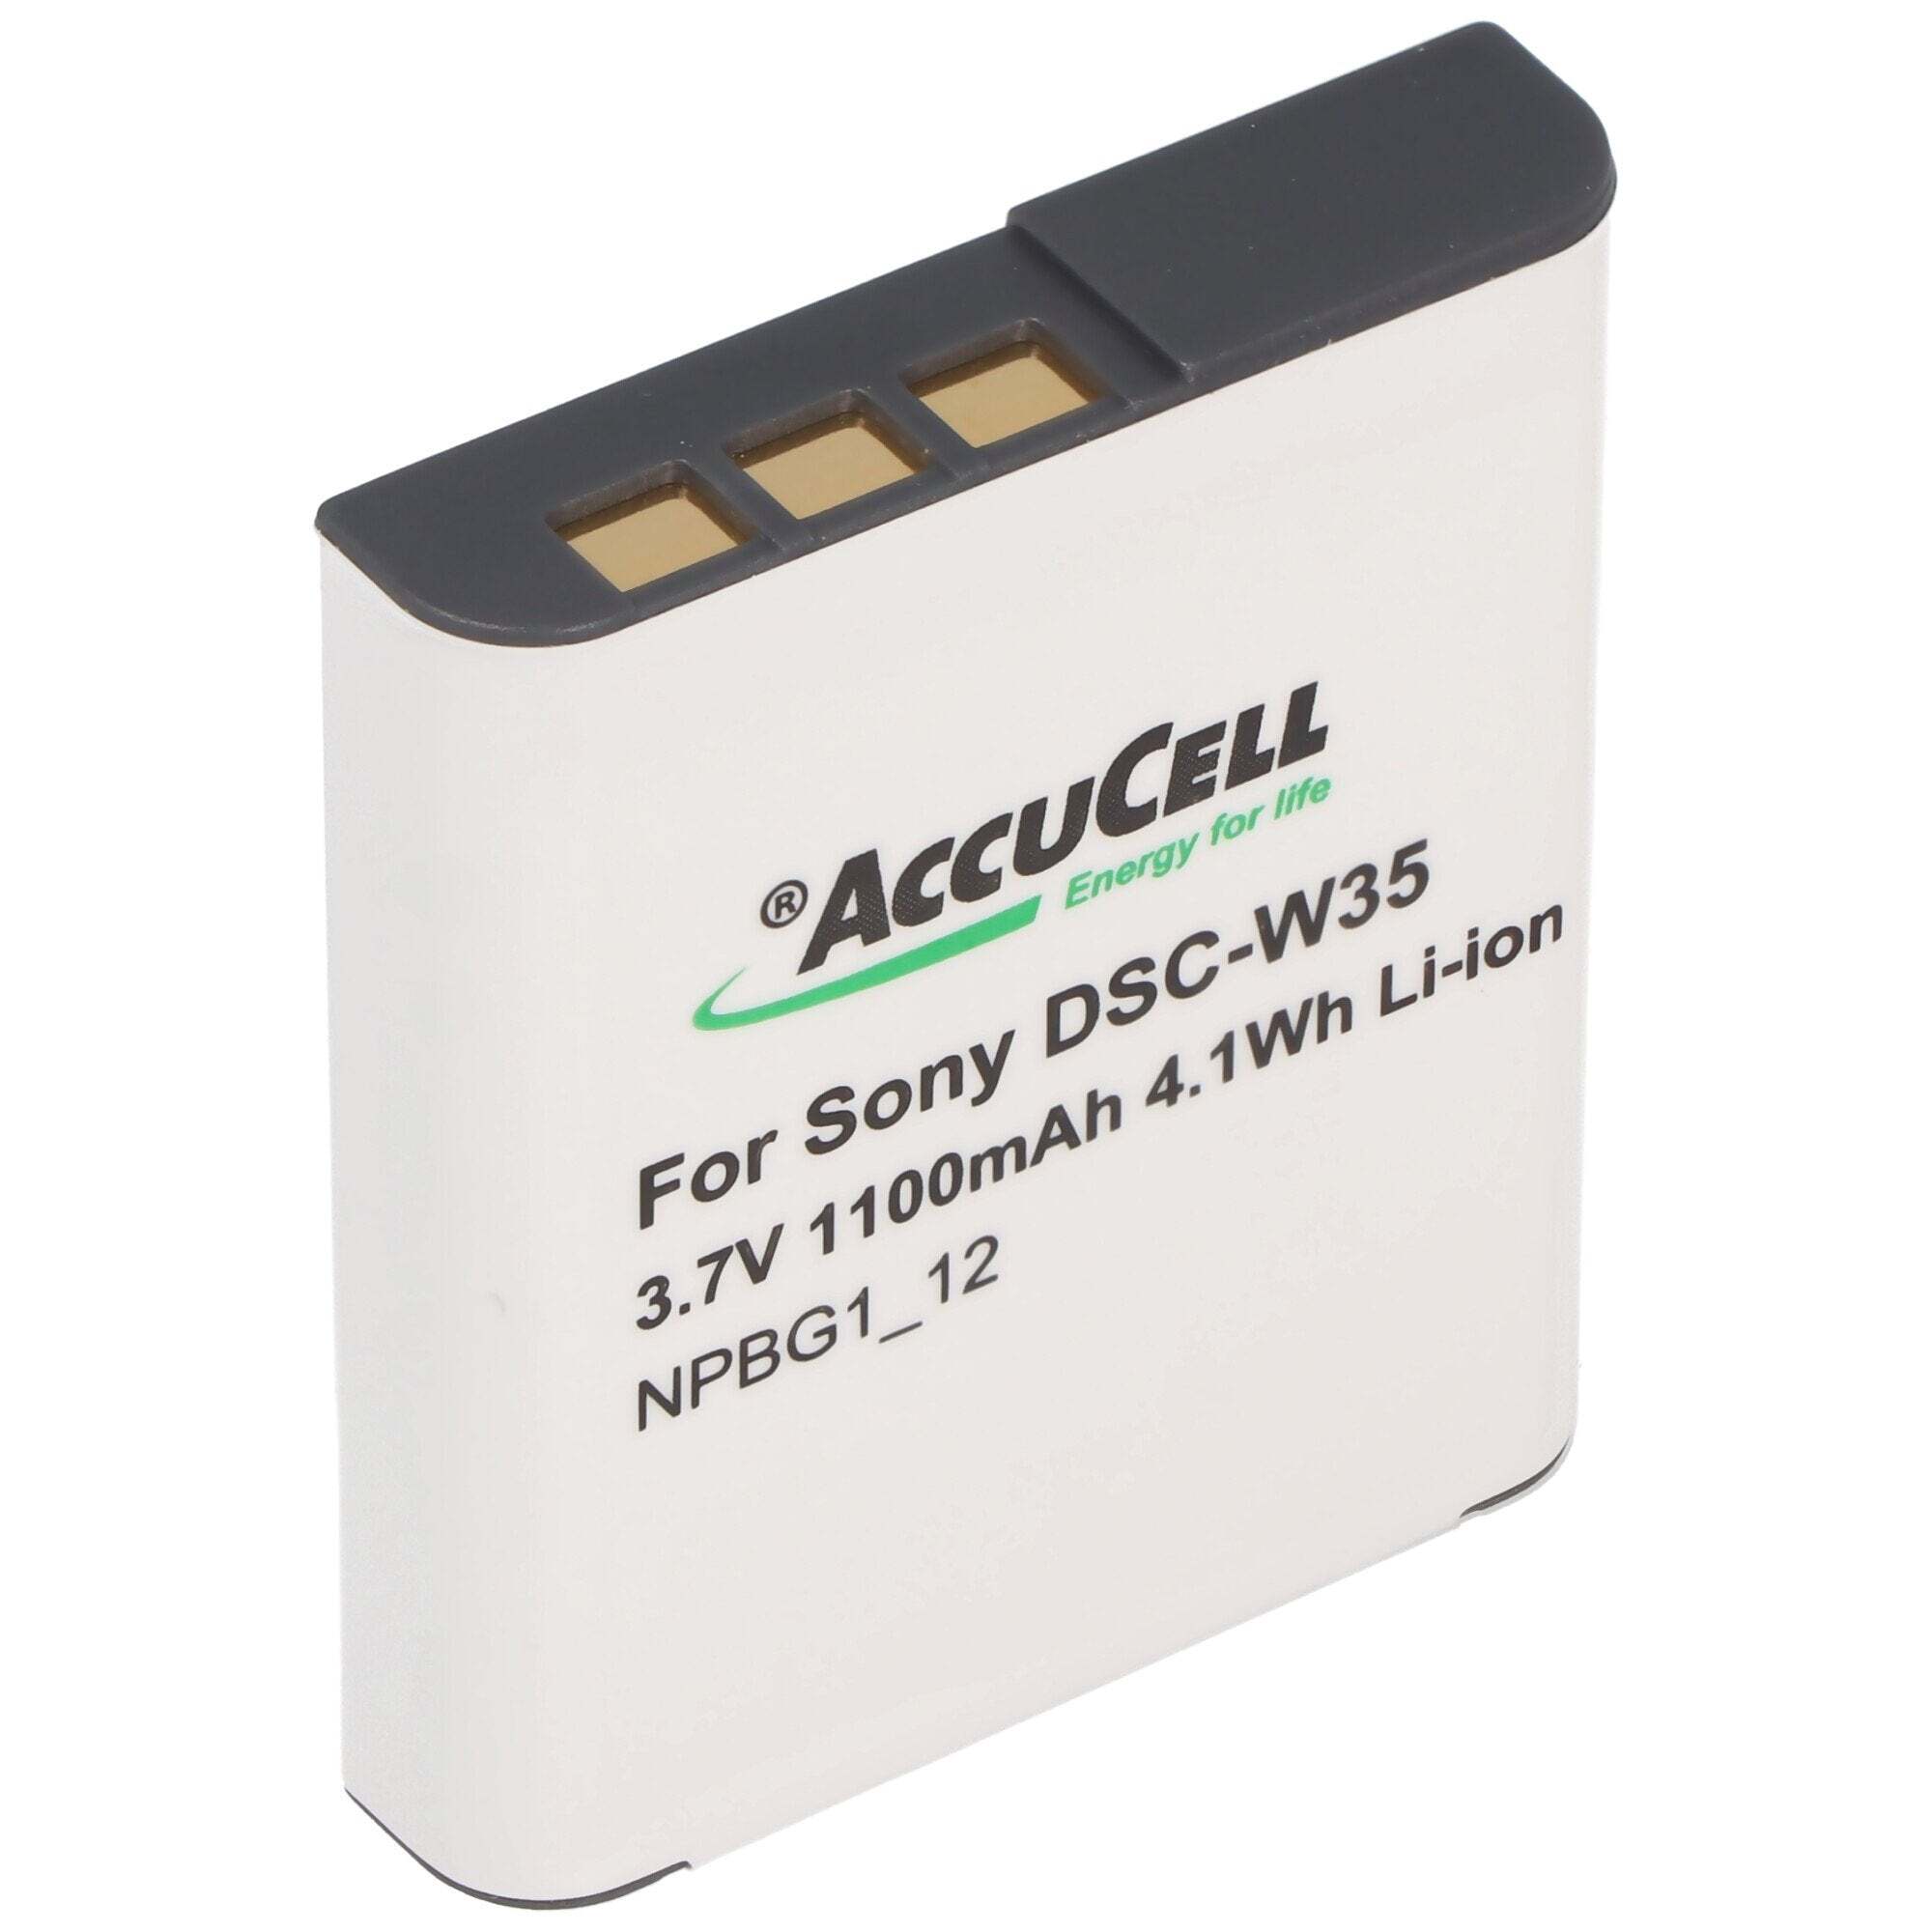 ACCUCELL AccuCell-batterij geschikt voor Sony DSC-N1